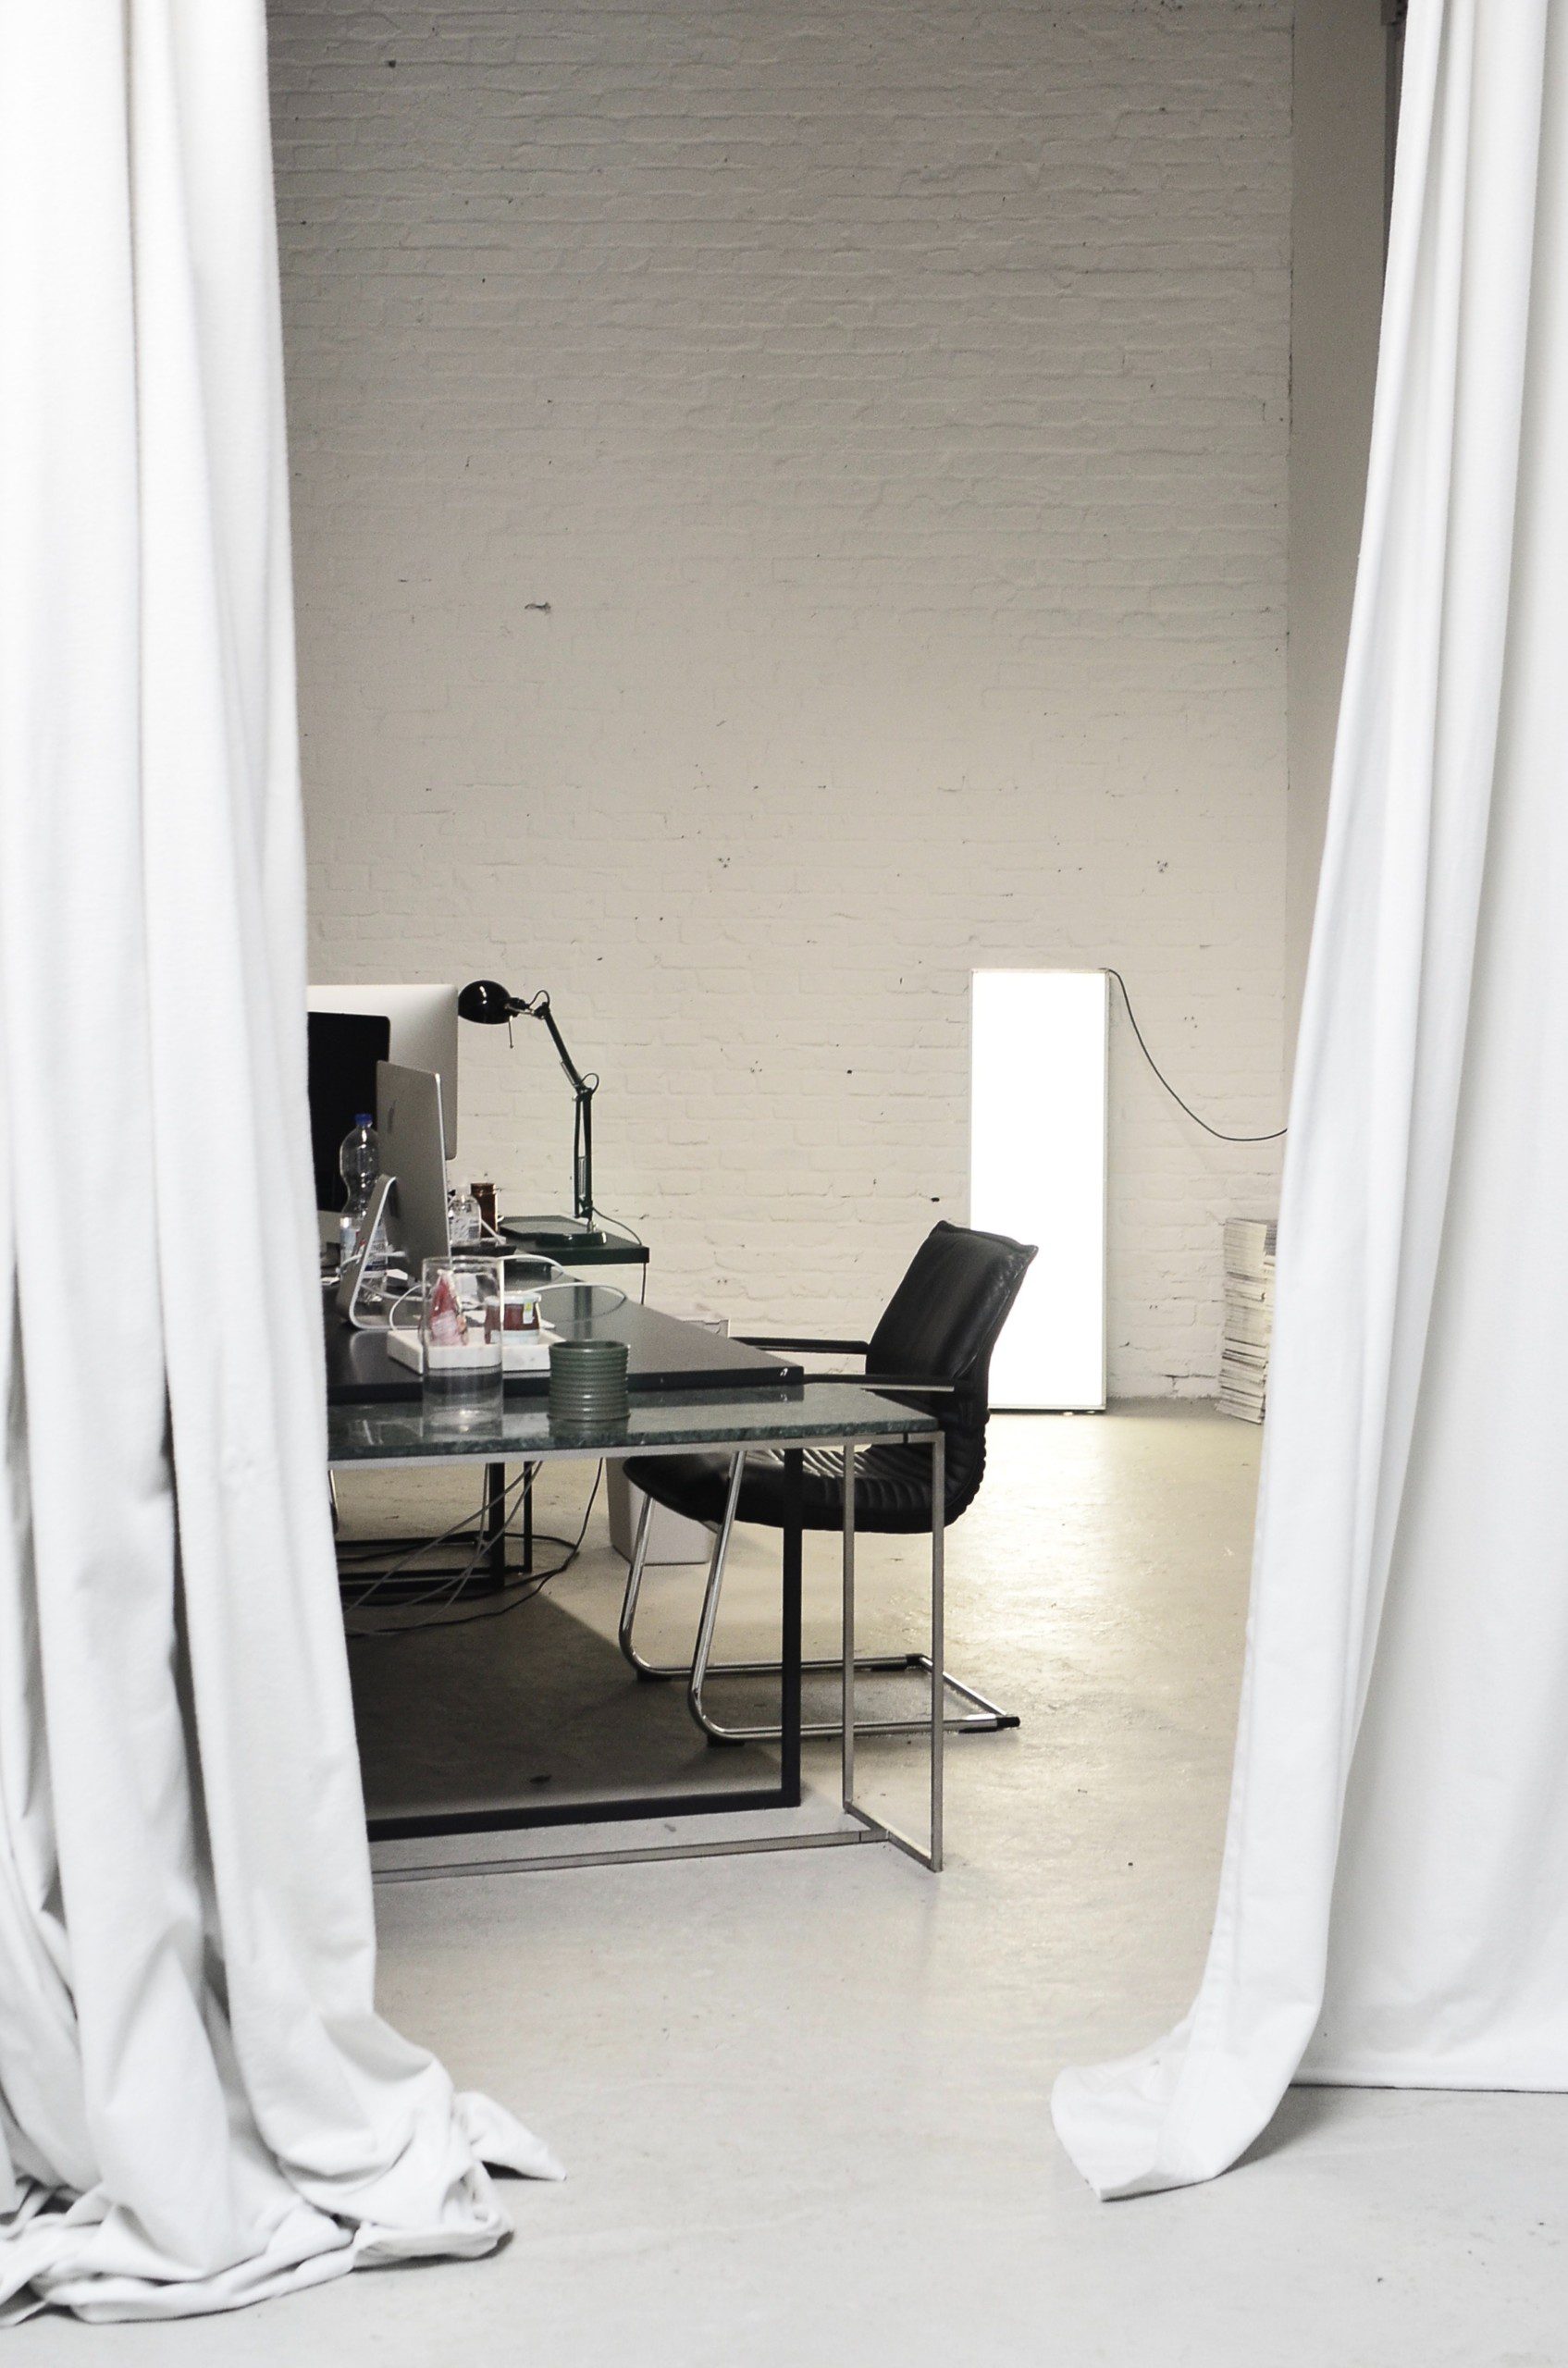 Imagem de um ambiente grande separado por um cortina branca. Ao fundo, uma mesa de escritório de aço com alguns objetos de estudo.